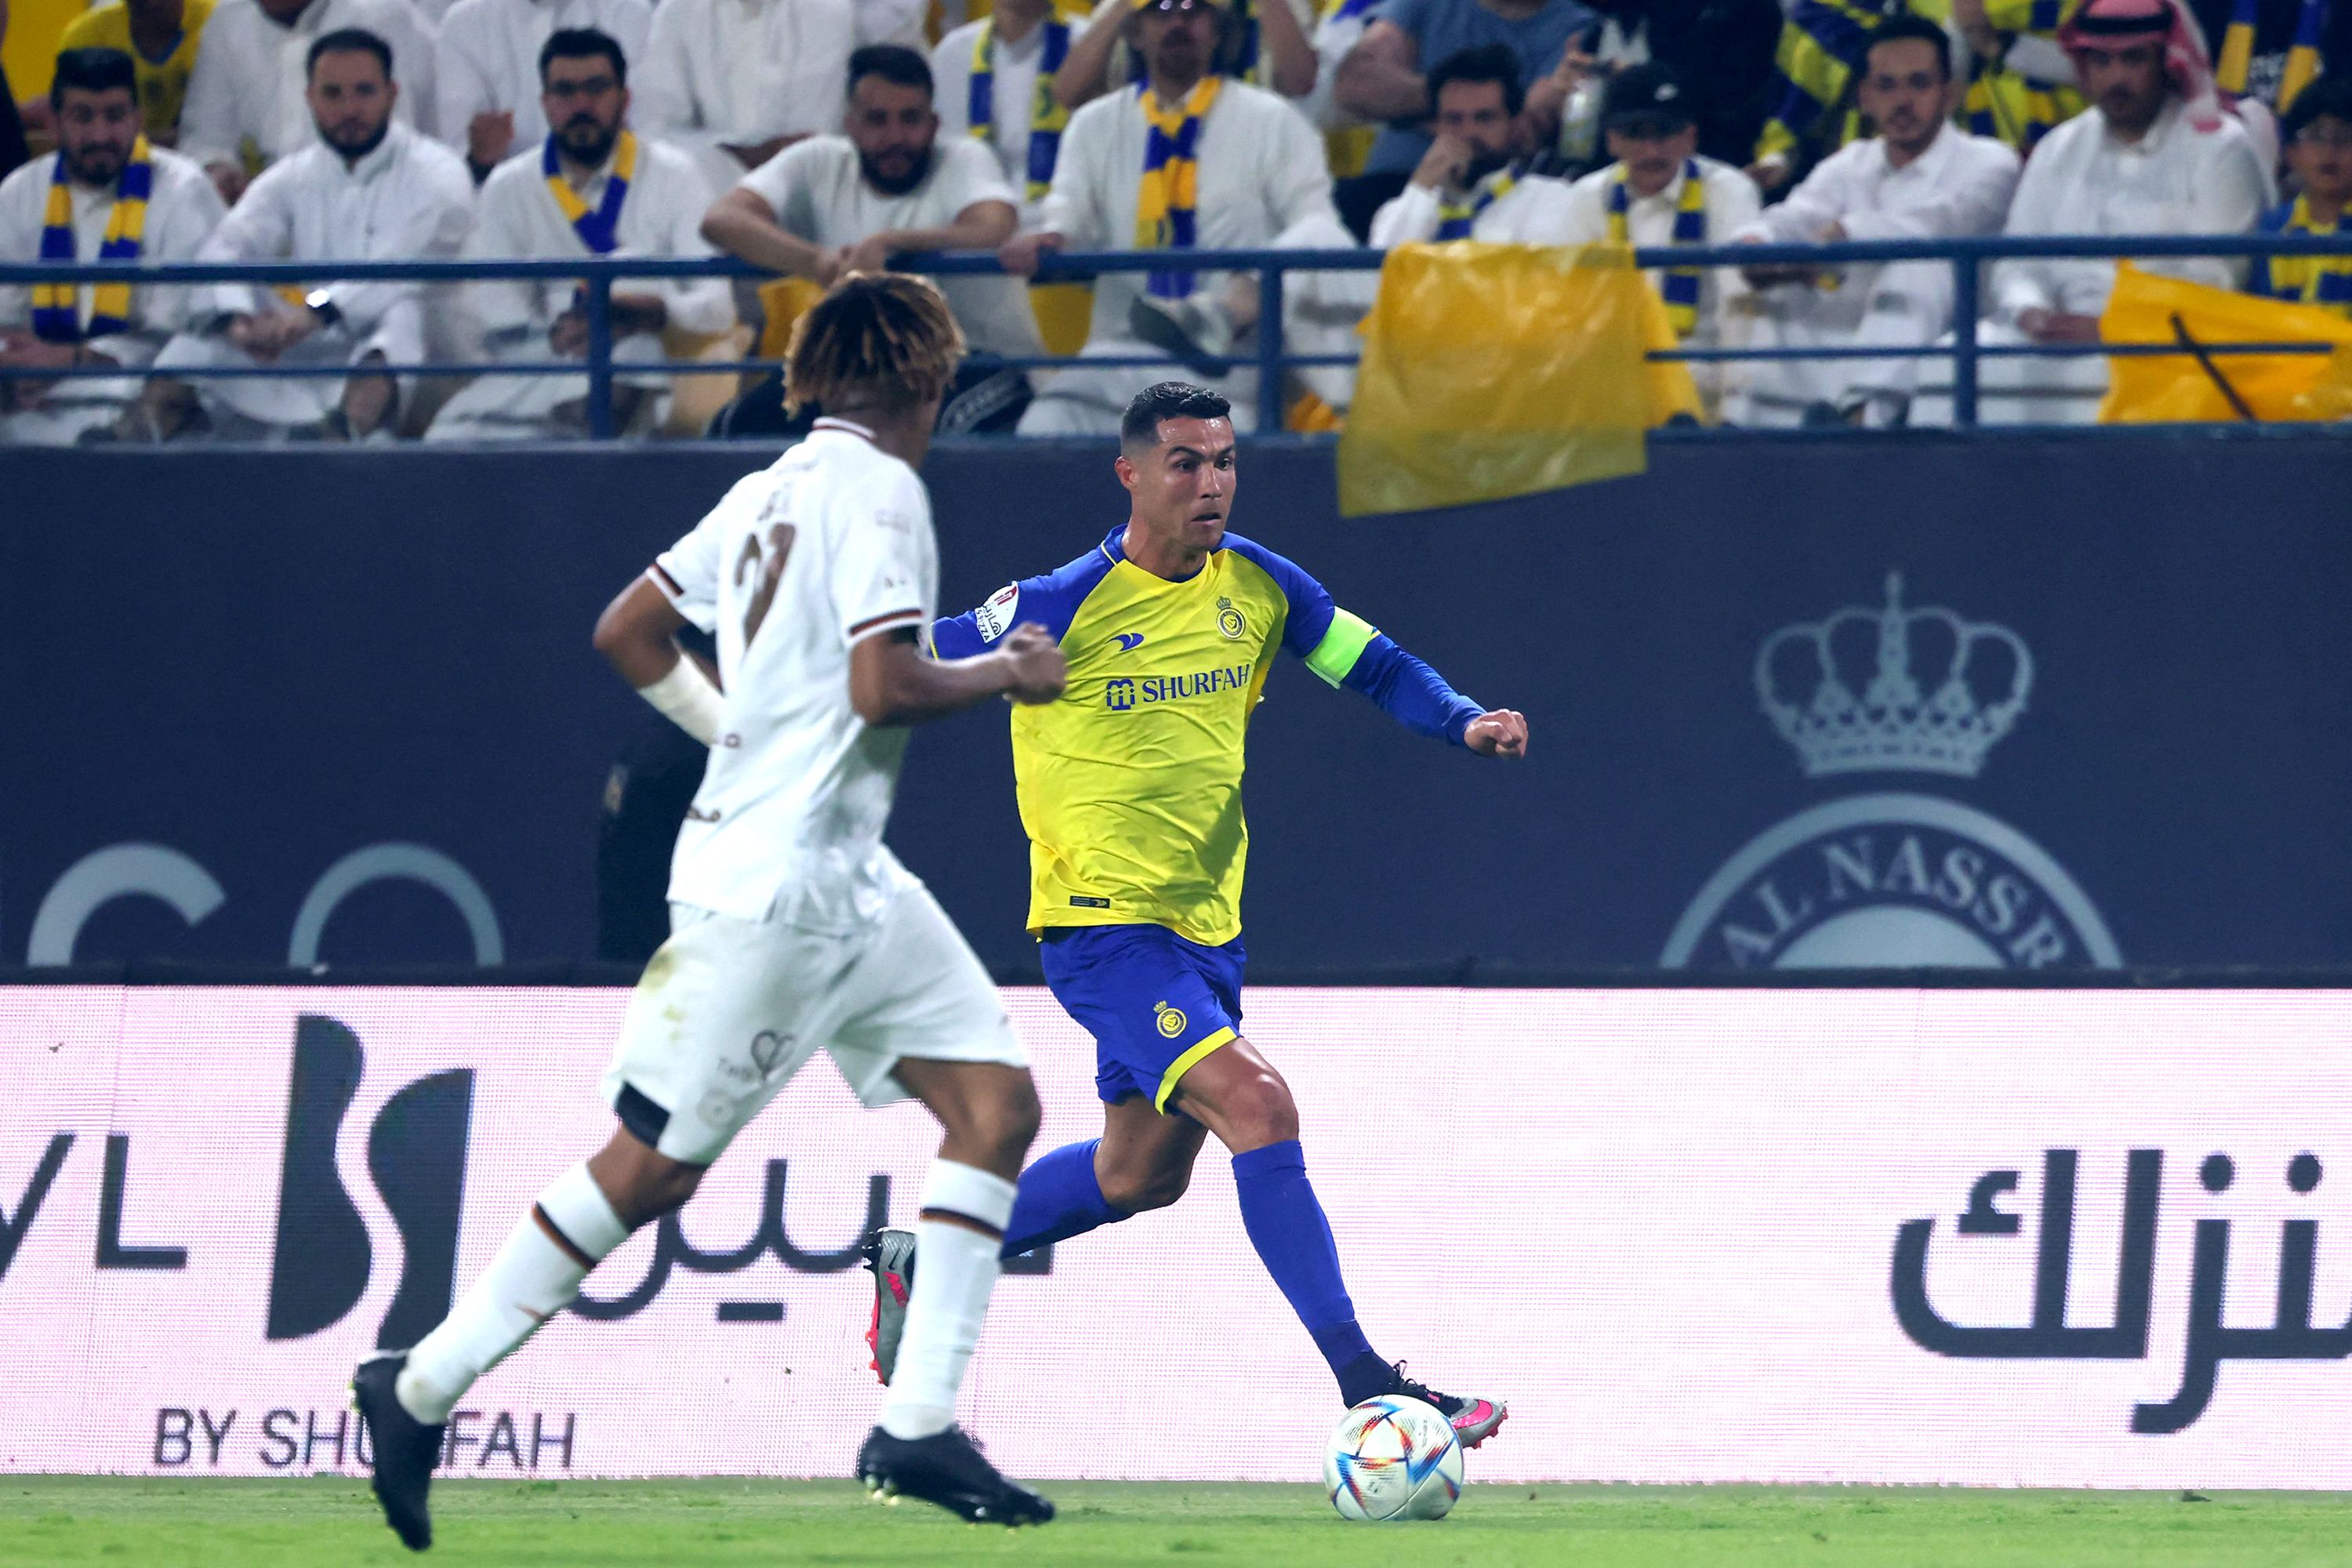 Fans Cheer as Ronaldo Takes Field at Al Nassr